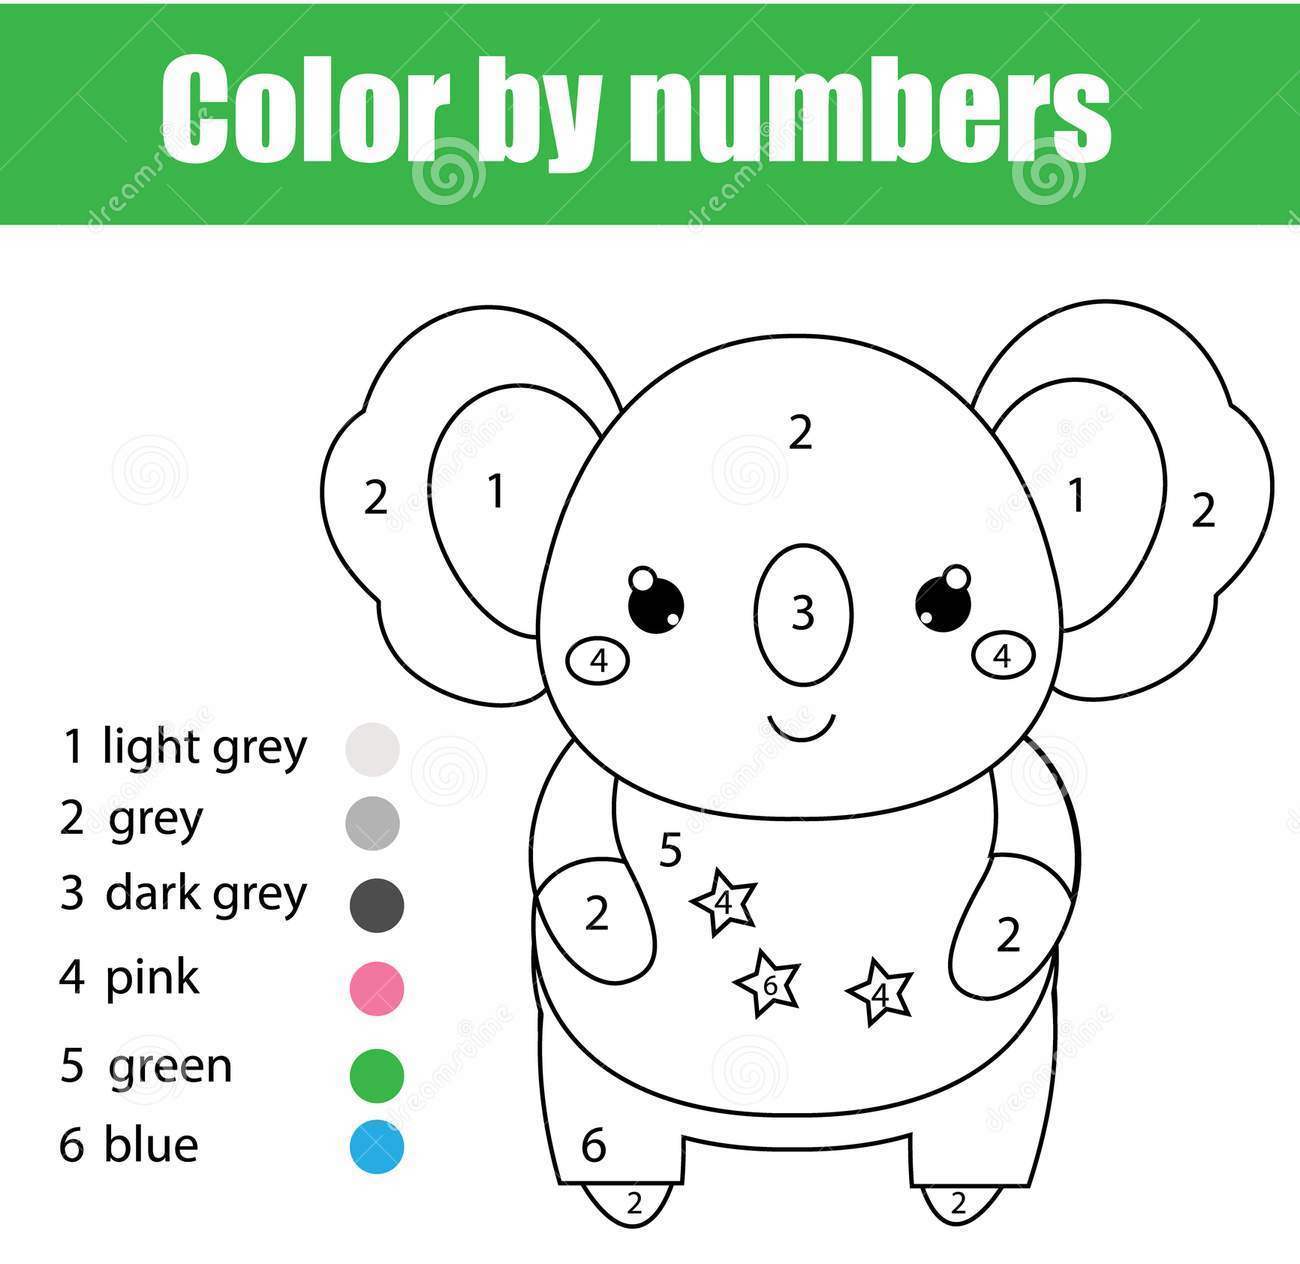 εκπαιδευτικό-παιχνίδι-παιδιών-χρωματίζοντας-σελίδα-με-το-χαριτωμένο-111913125.jpg